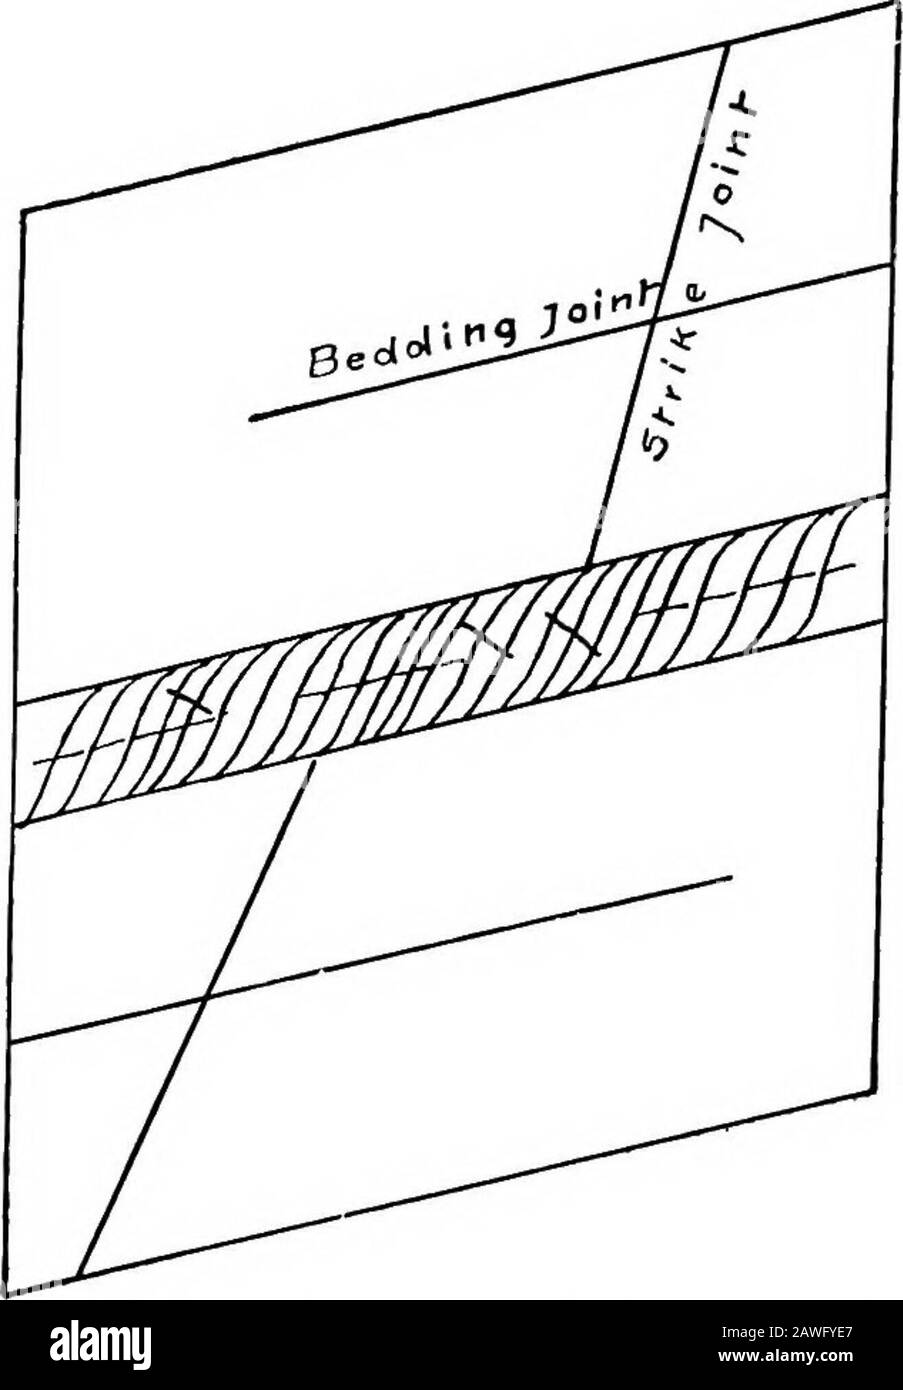 Geología estructural . las relaciones de la hendidura a la presión? Observe las relaciones de división de fract-ure con las articulaciones en las capas masivas adyacentes. (Véase también la Fig. 37 ypage 121). Las hojas son más finas cerca de la superficie y se espesan rápidamente por debajo.Pueden ser curvadas, y en general son paralelas a la roca sur-cara. Normalmente se encuentran en forma de lente cuando se trazan a cierta distancia. Se han observado muchos casos de alargamiento de bloques cuando se sacaron, a veces con violencia explosiva, lo que indica que en el borde estaban bajo tensión compresiva. 26 GEOLOGÍA ESTRUCTURAL la compresión es indigat Foto de stock